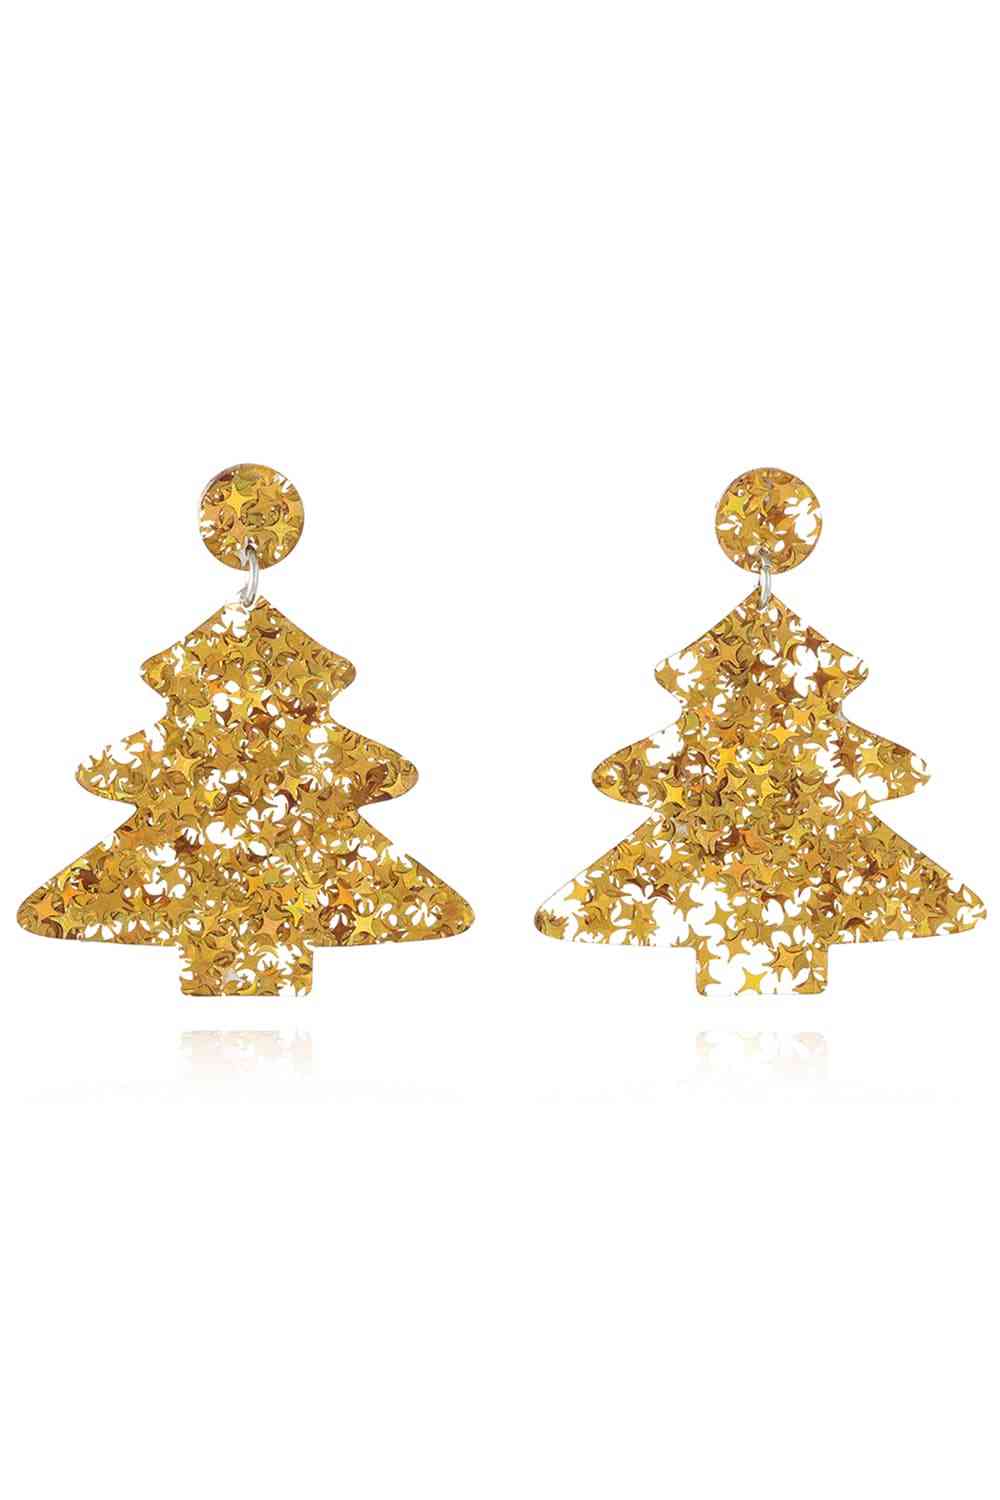 Christmas Tree Acrylic Earrings - Gold/Style B / One Size - Women’s Jewelry - Earrings - 17 - 2024